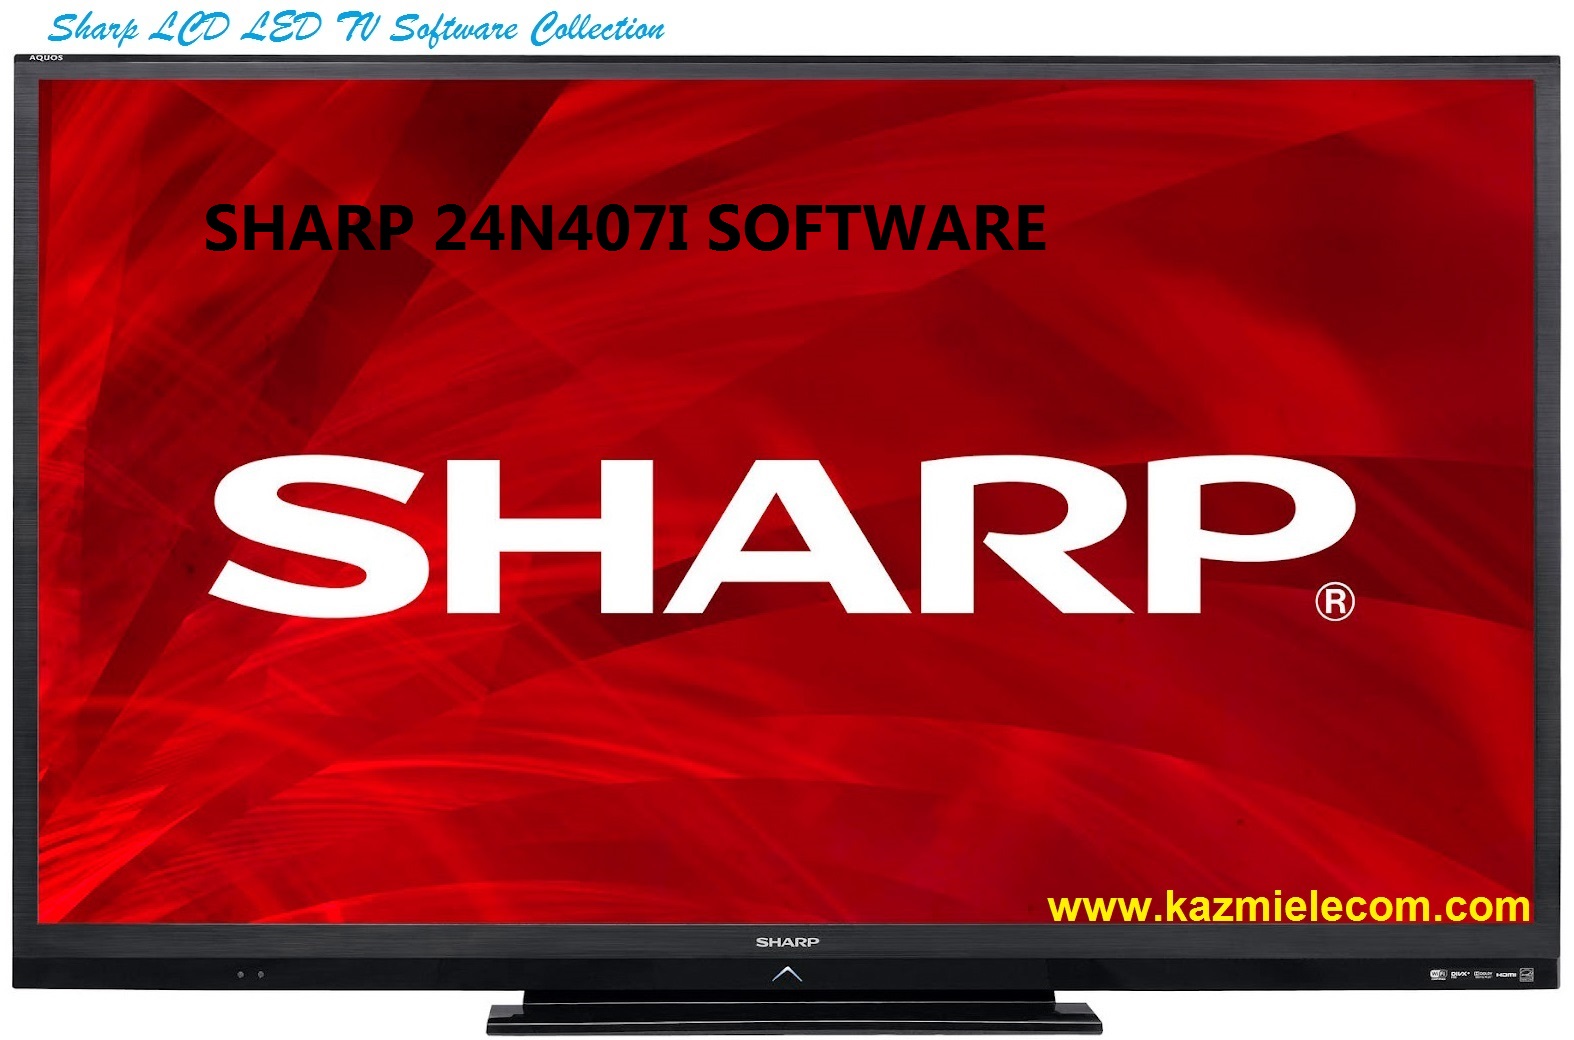 Sharp 24N407I